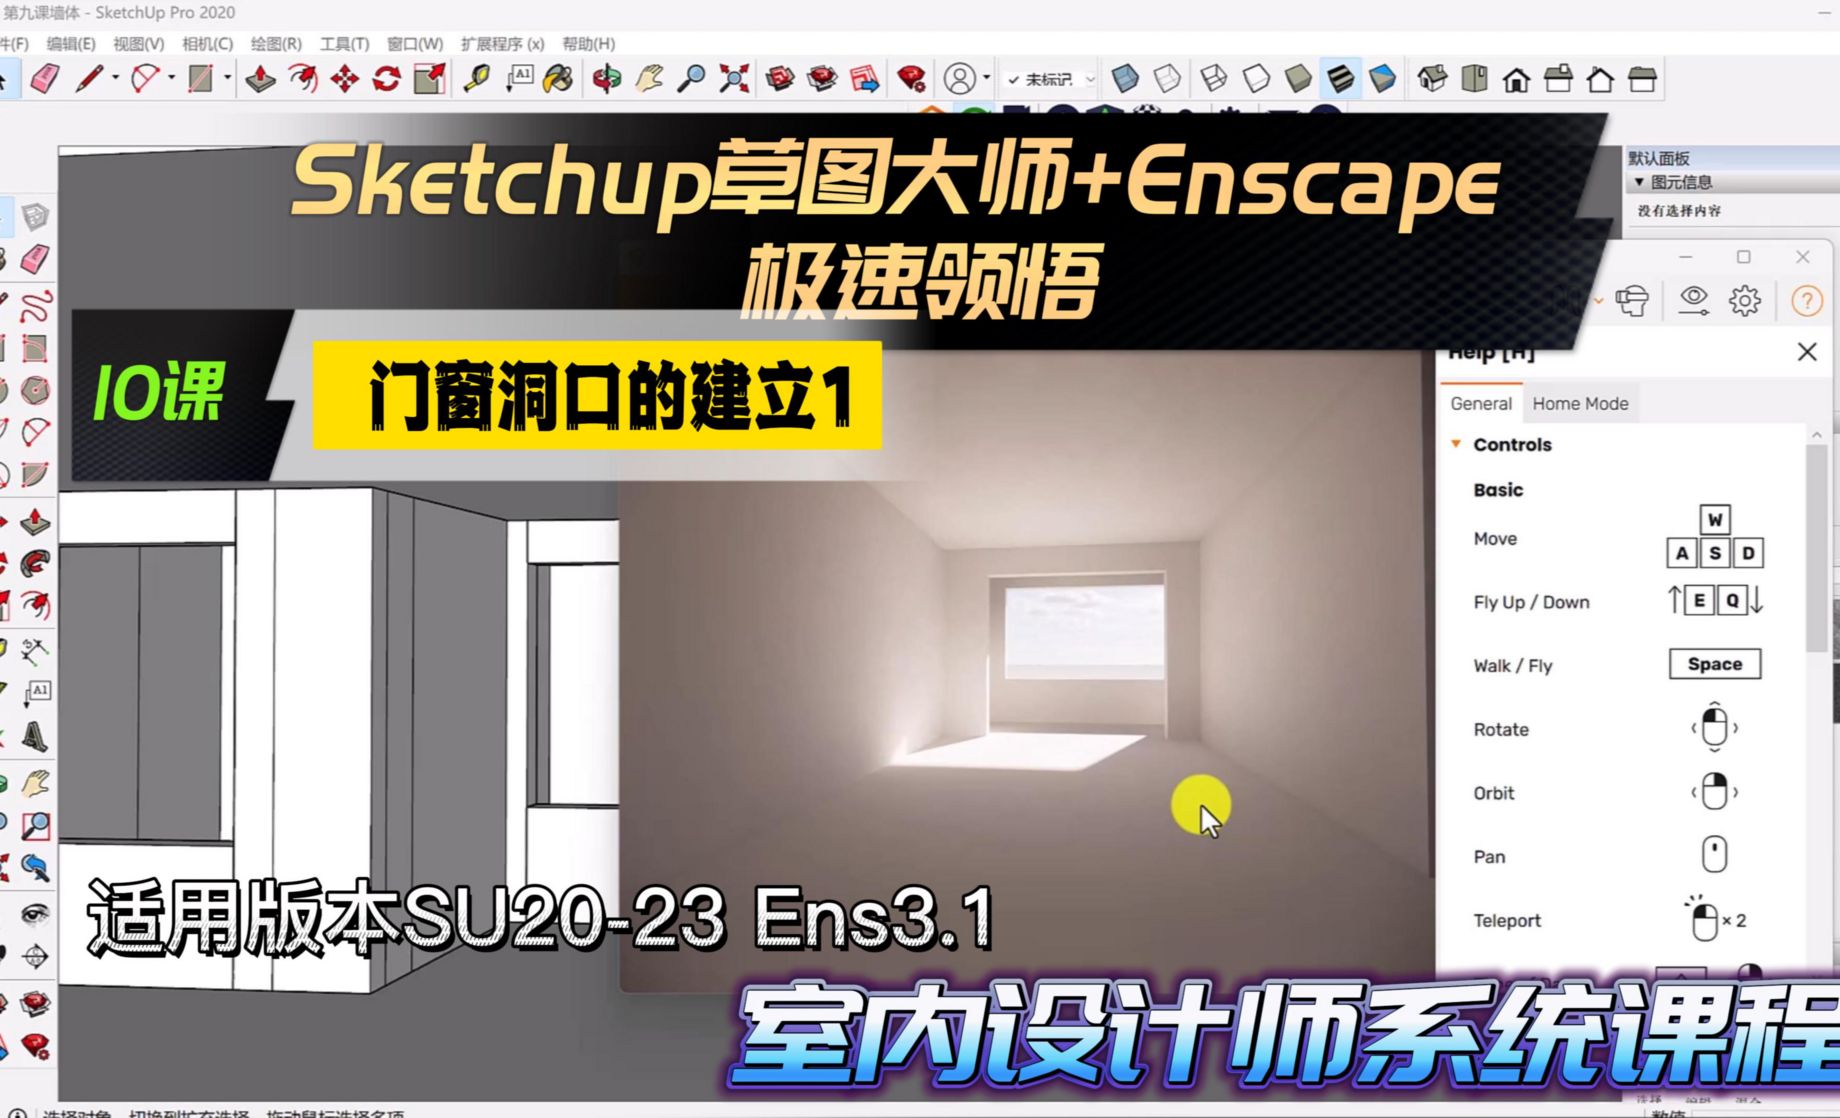 Sketchup+Enscape室内设计极速领悟-门窗洞口的建立1  